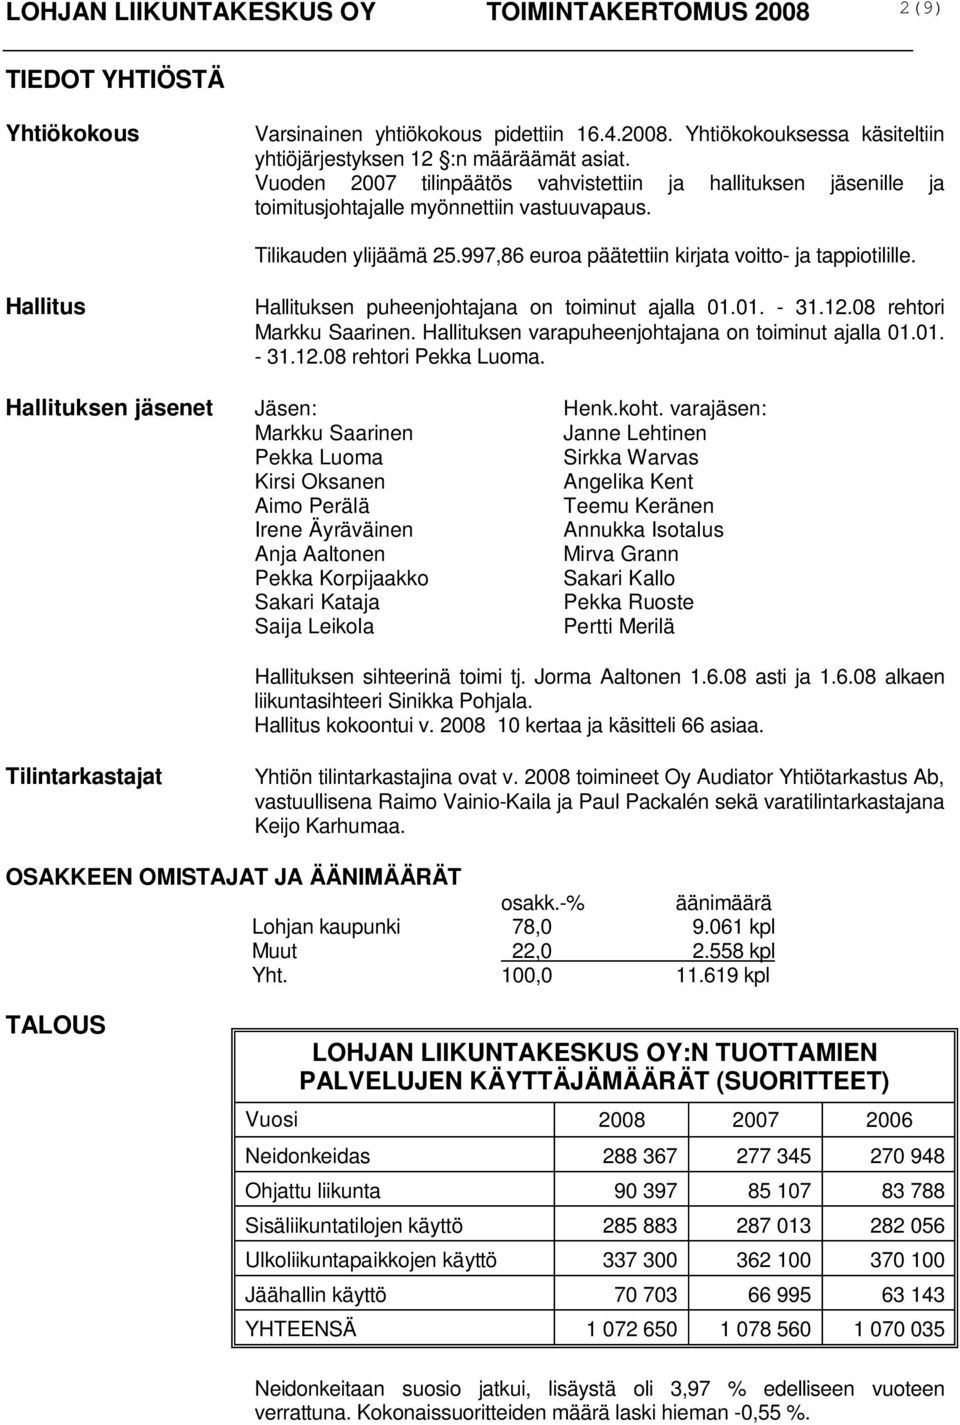 Hallitus Hallituksen puheenjohtajana on toiminut ajalla 01.01. - 31.12.08 rehtori Markku Saarinen. Hallituksen varapuheenjohtajana on toiminut ajalla 01.01. - 31.12.08 rehtori Pekka Luoma.